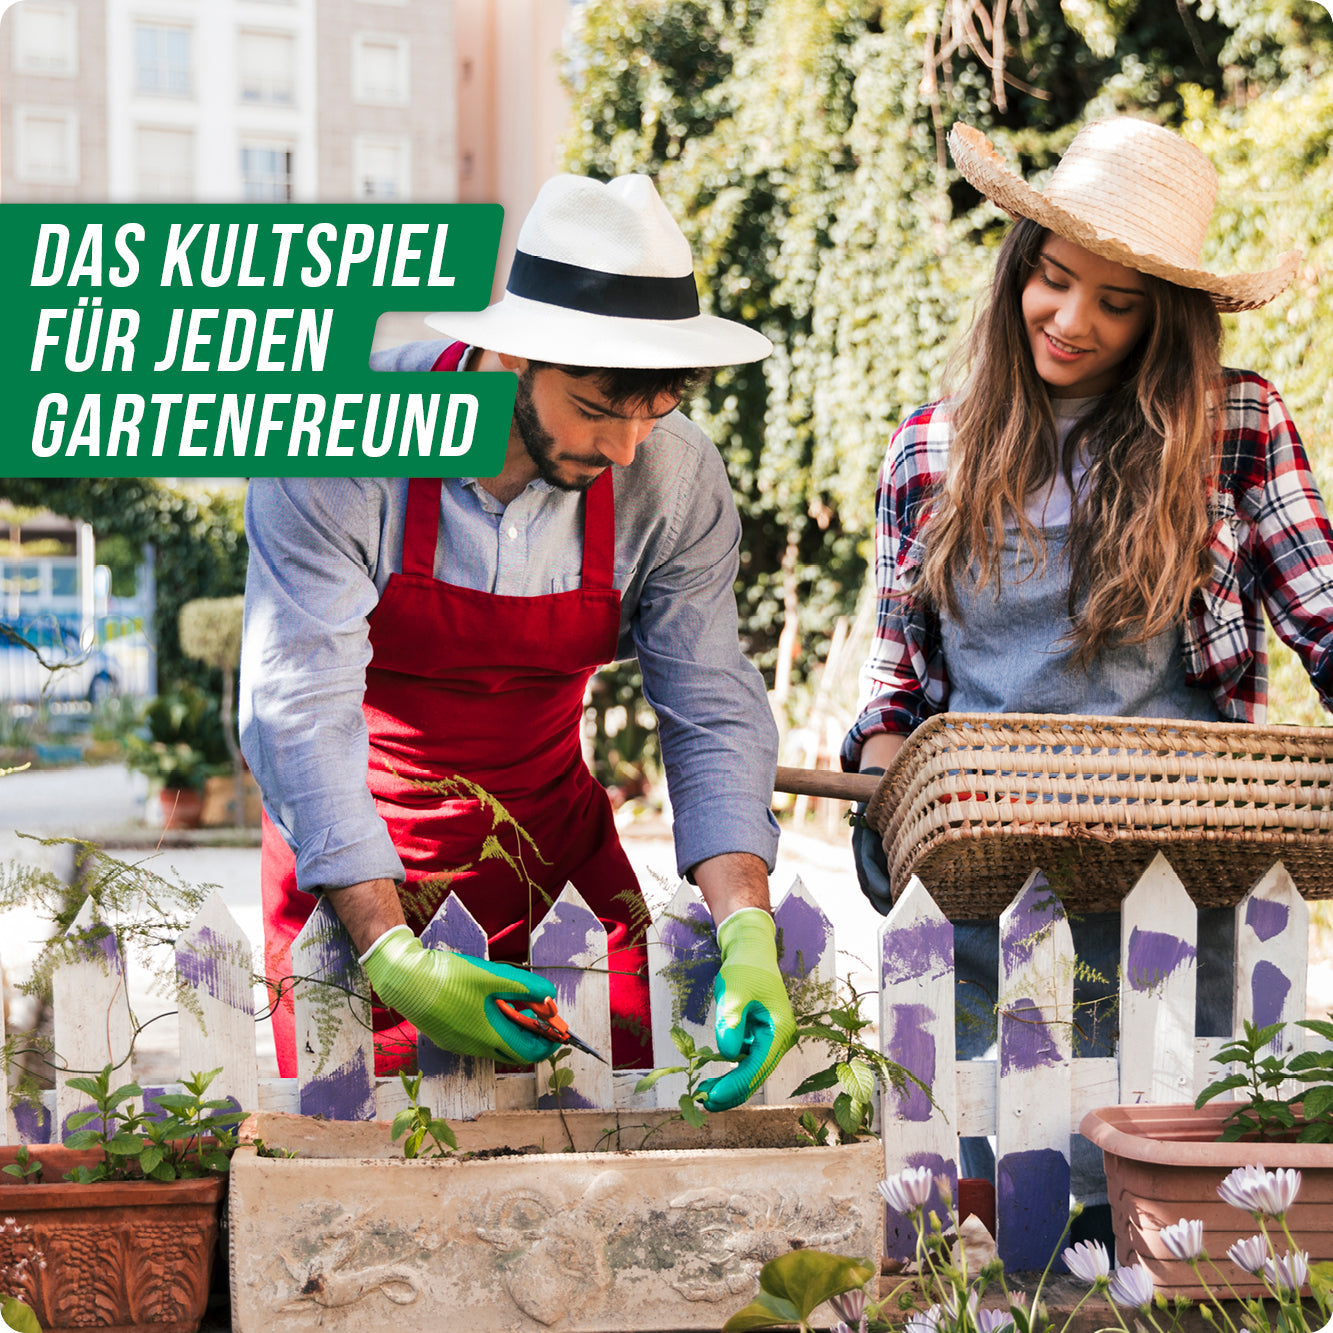 STADT LAND VOLLPFOSTEN® - Garten Edition "Alles im Grünen"